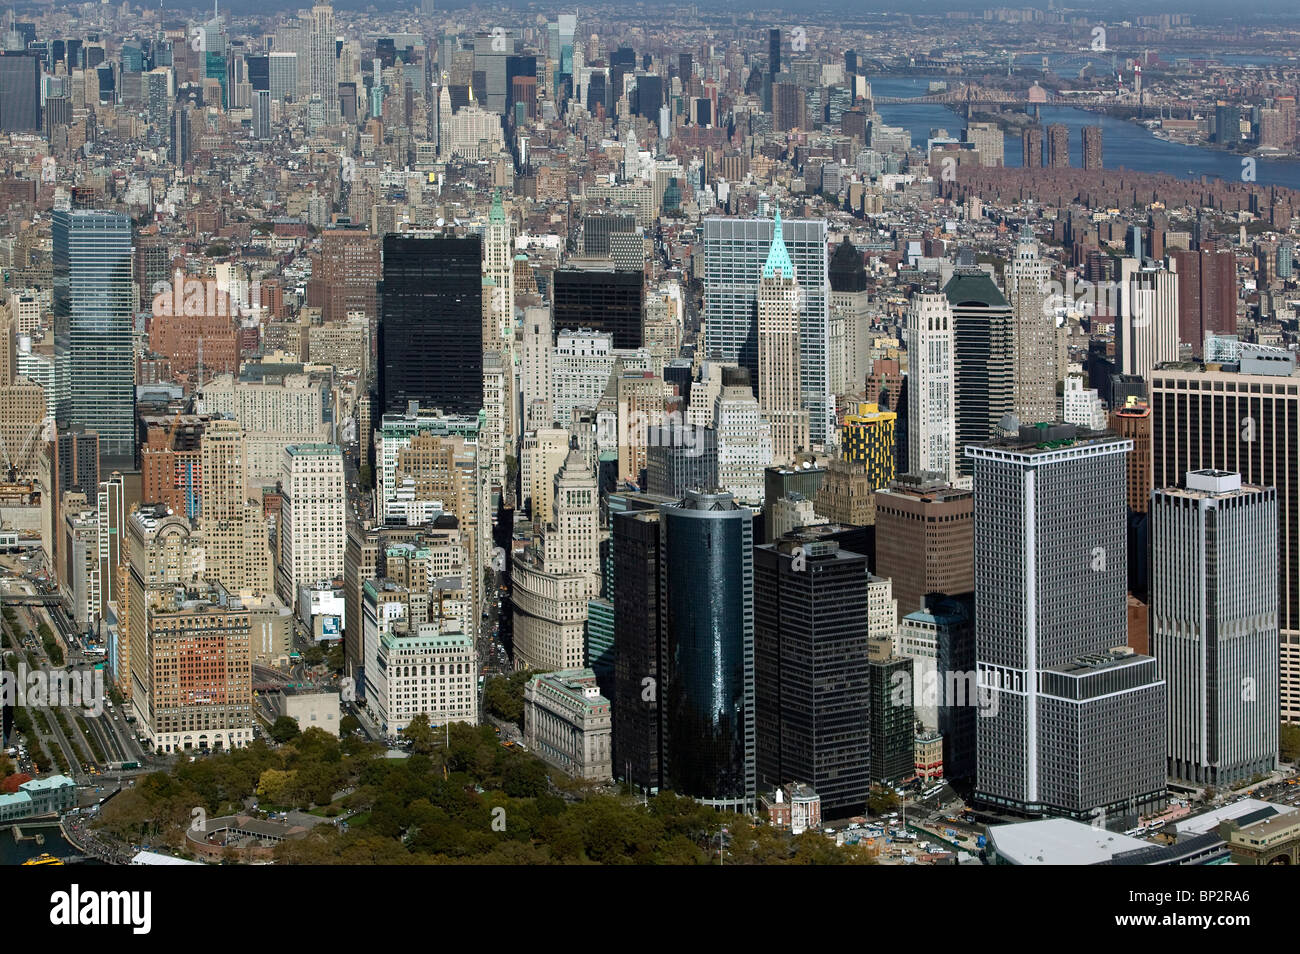 Vista aérea sobre el centro de Manhattan, ciudad de Nueva York Foto de stock